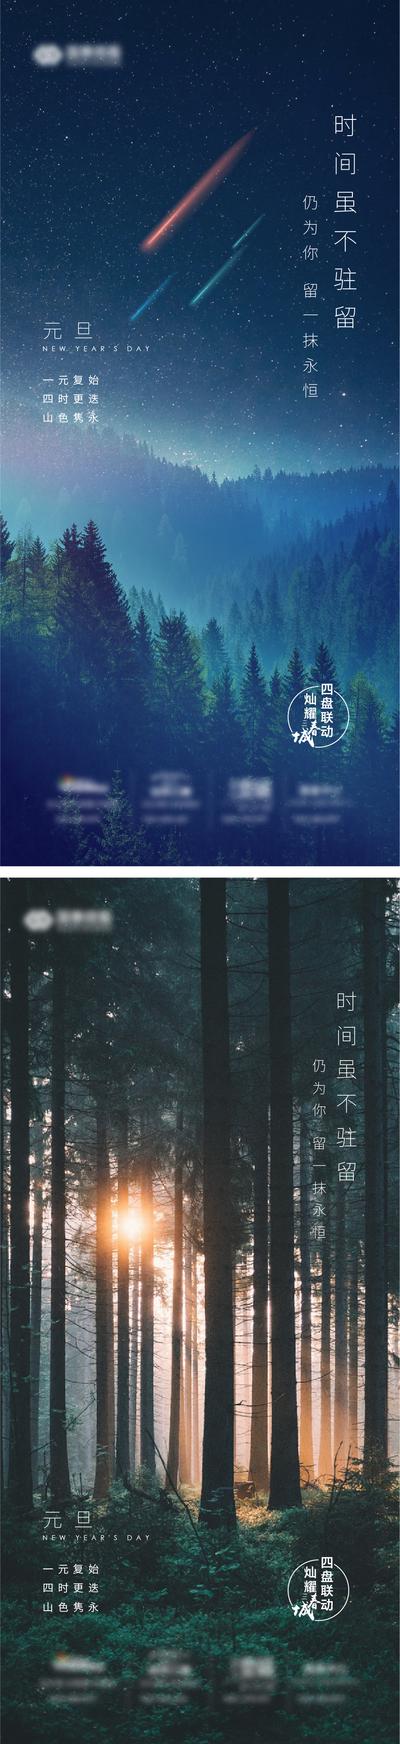 南门网 海报 房地产 公历节日 元旦 森林 流星